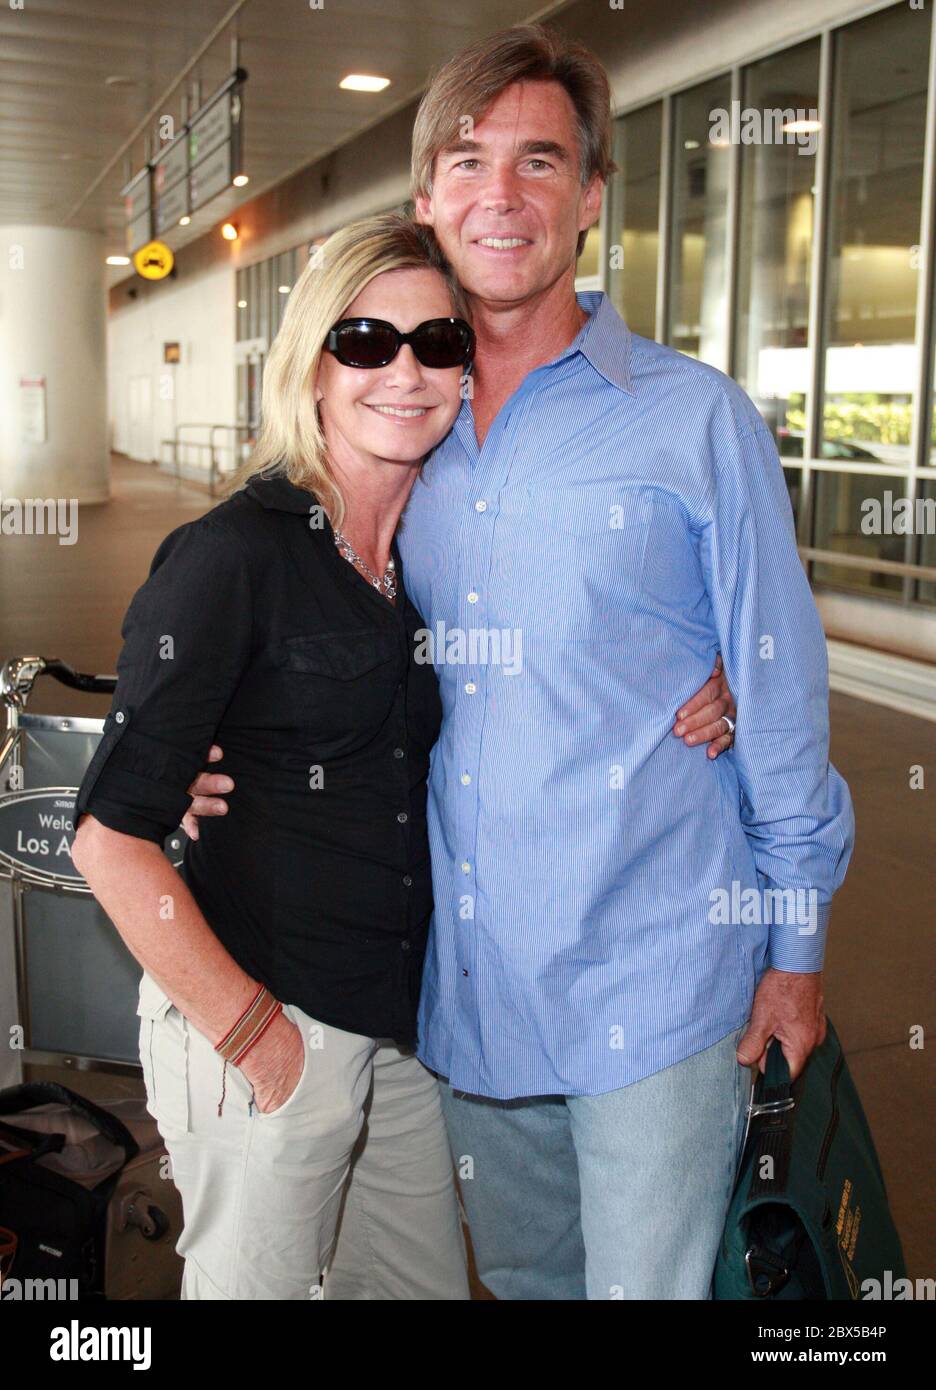 Olivia Newton-John et son mari arrivent à l'aéroport de LAX après de courtes vacances en Floride. Olivia était lumineuse et souriait à son retour. Août 14 2008 Banque D'Images